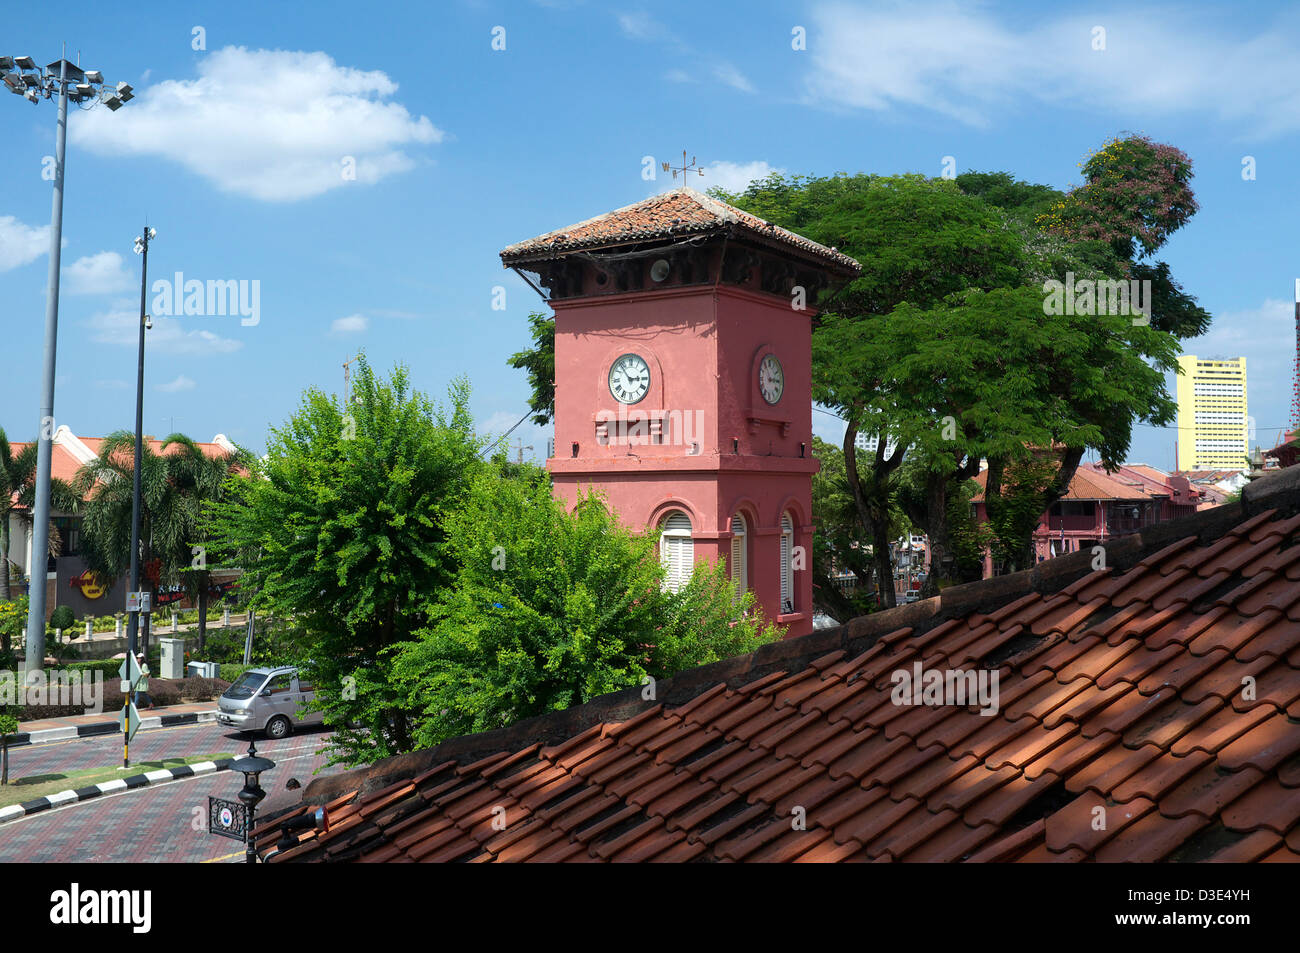 L'Tang Beng Swee Tour de l'horloge à Melaka, Malaisie Banque D'Images